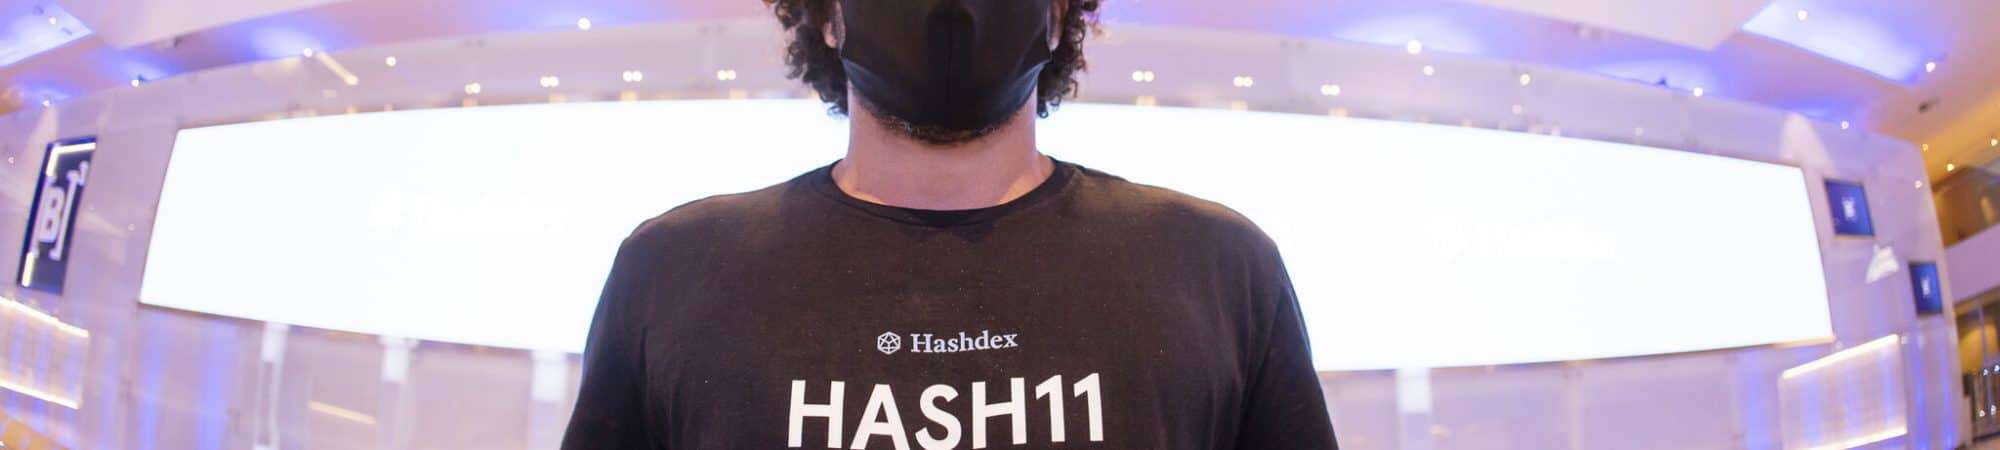 Imagem mostra um jovem com uma camiseta onde pode-se ler a palavra HASH11, sigla do ticker de negociação do primeiro fundo ETF de criptomoedas brasileiro